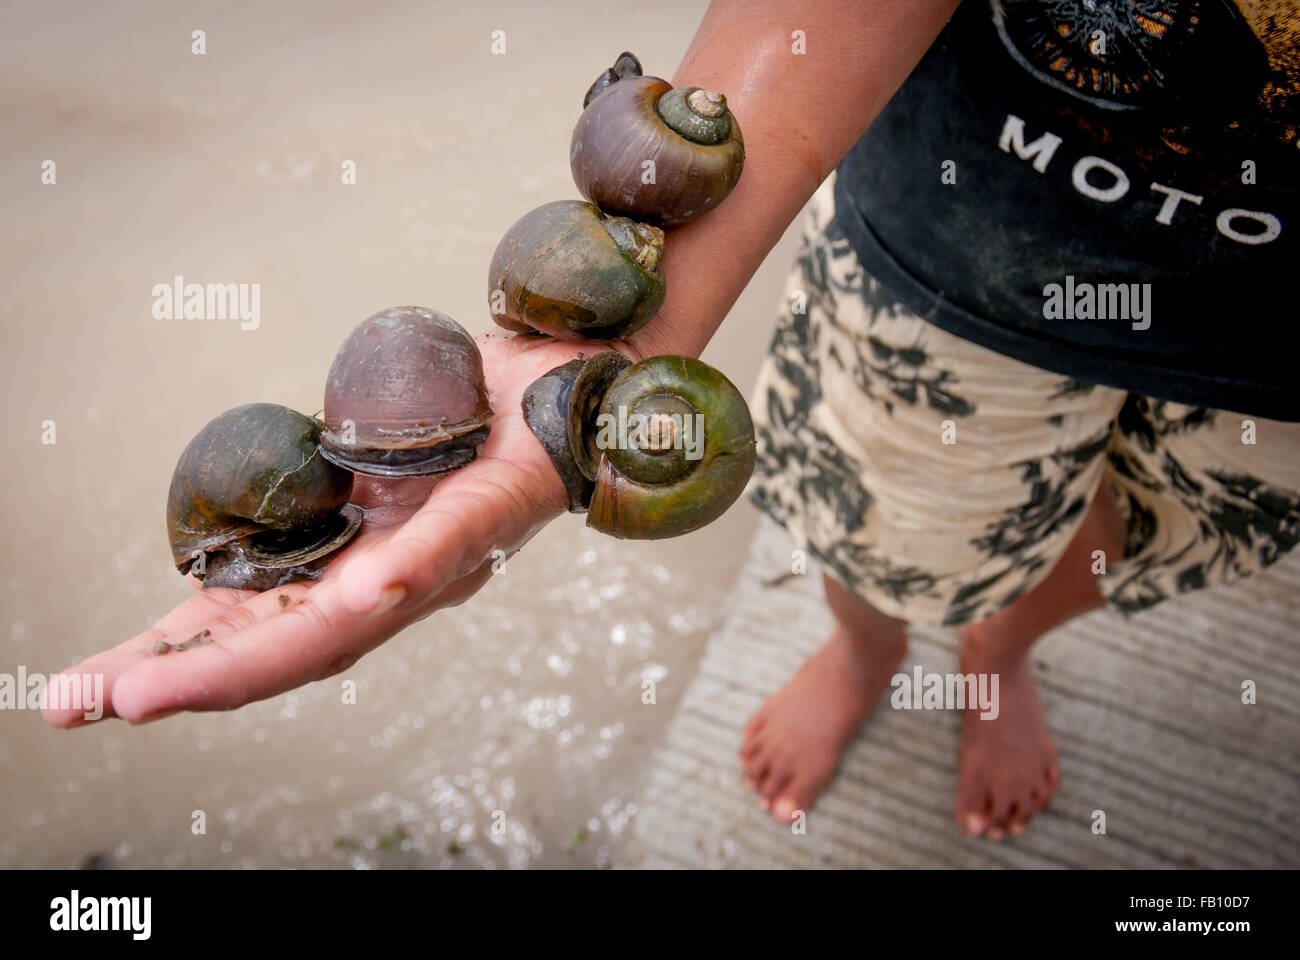 Un enfant montrant sa prise: Escargots d'eau douce. Banque D'Images